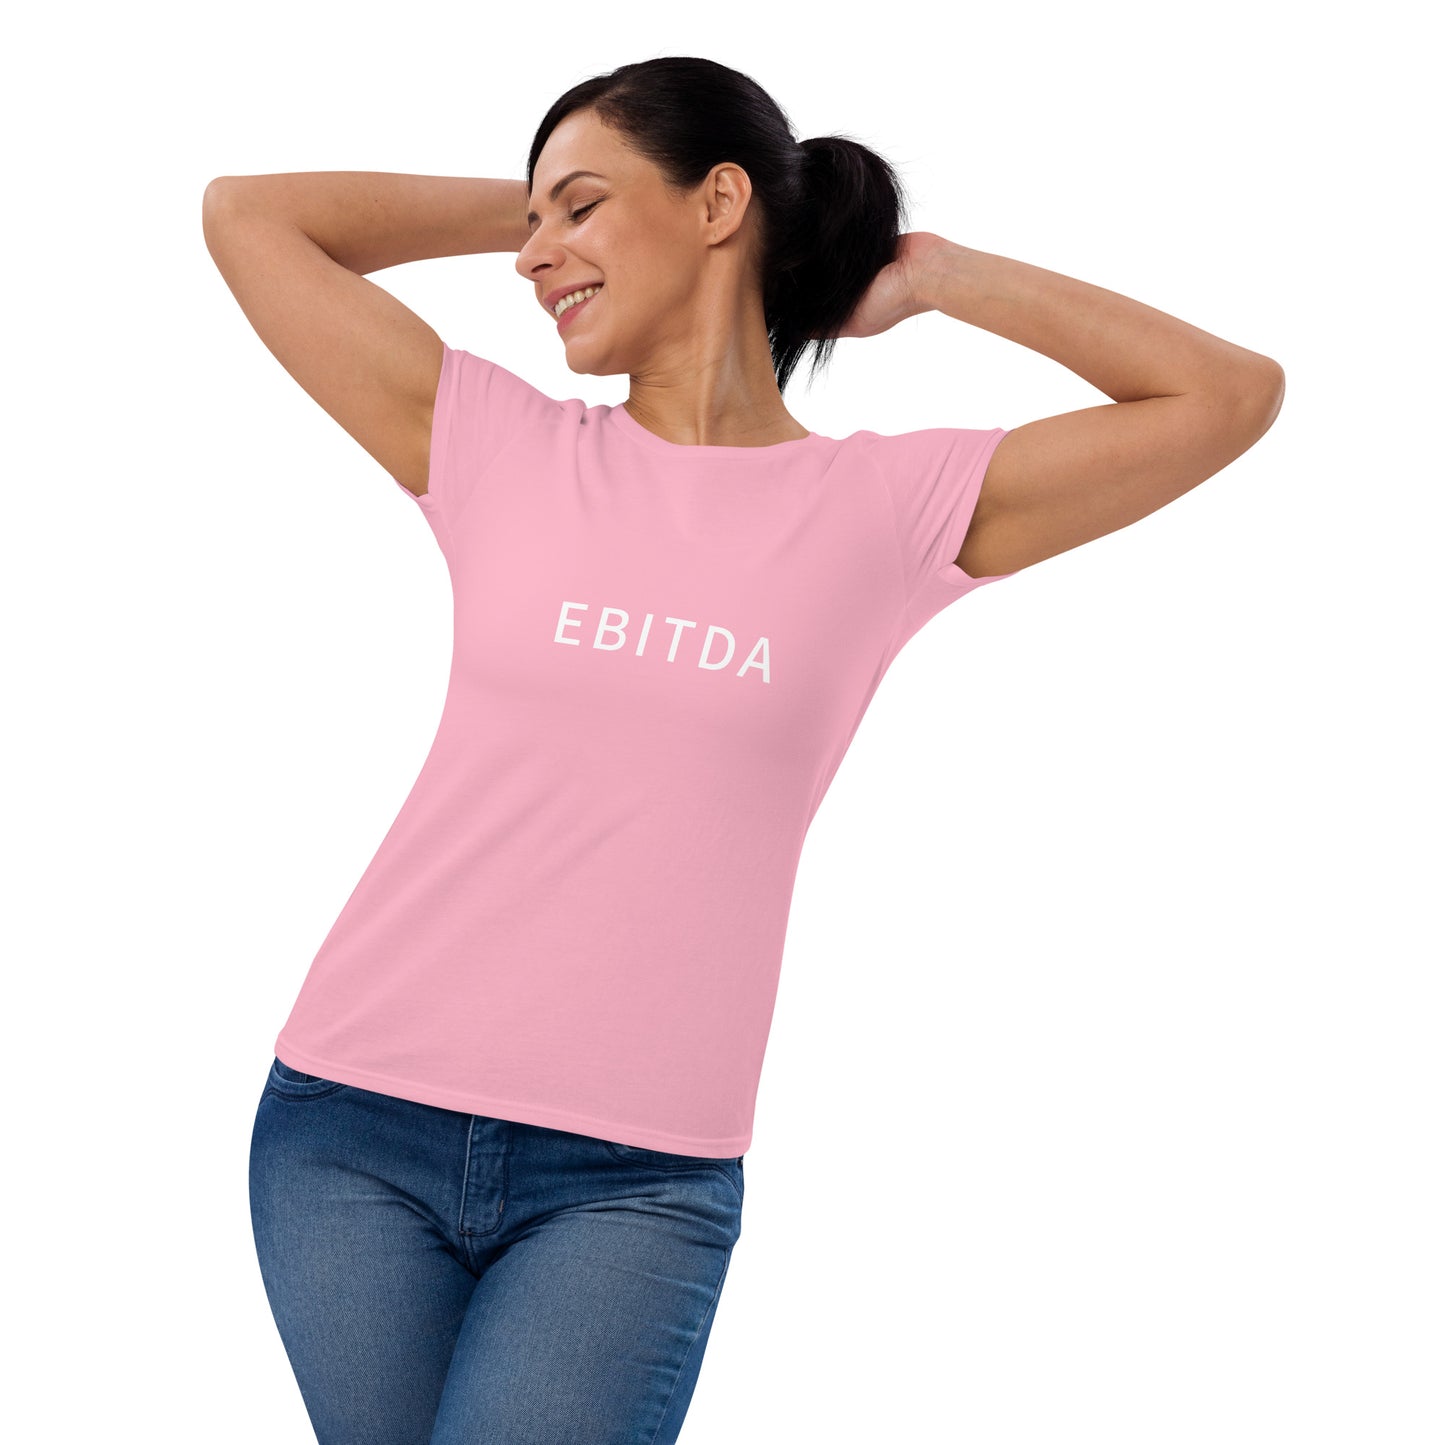 EBITDA - Women's Fashion Fit T-Shirt - Gildan 880